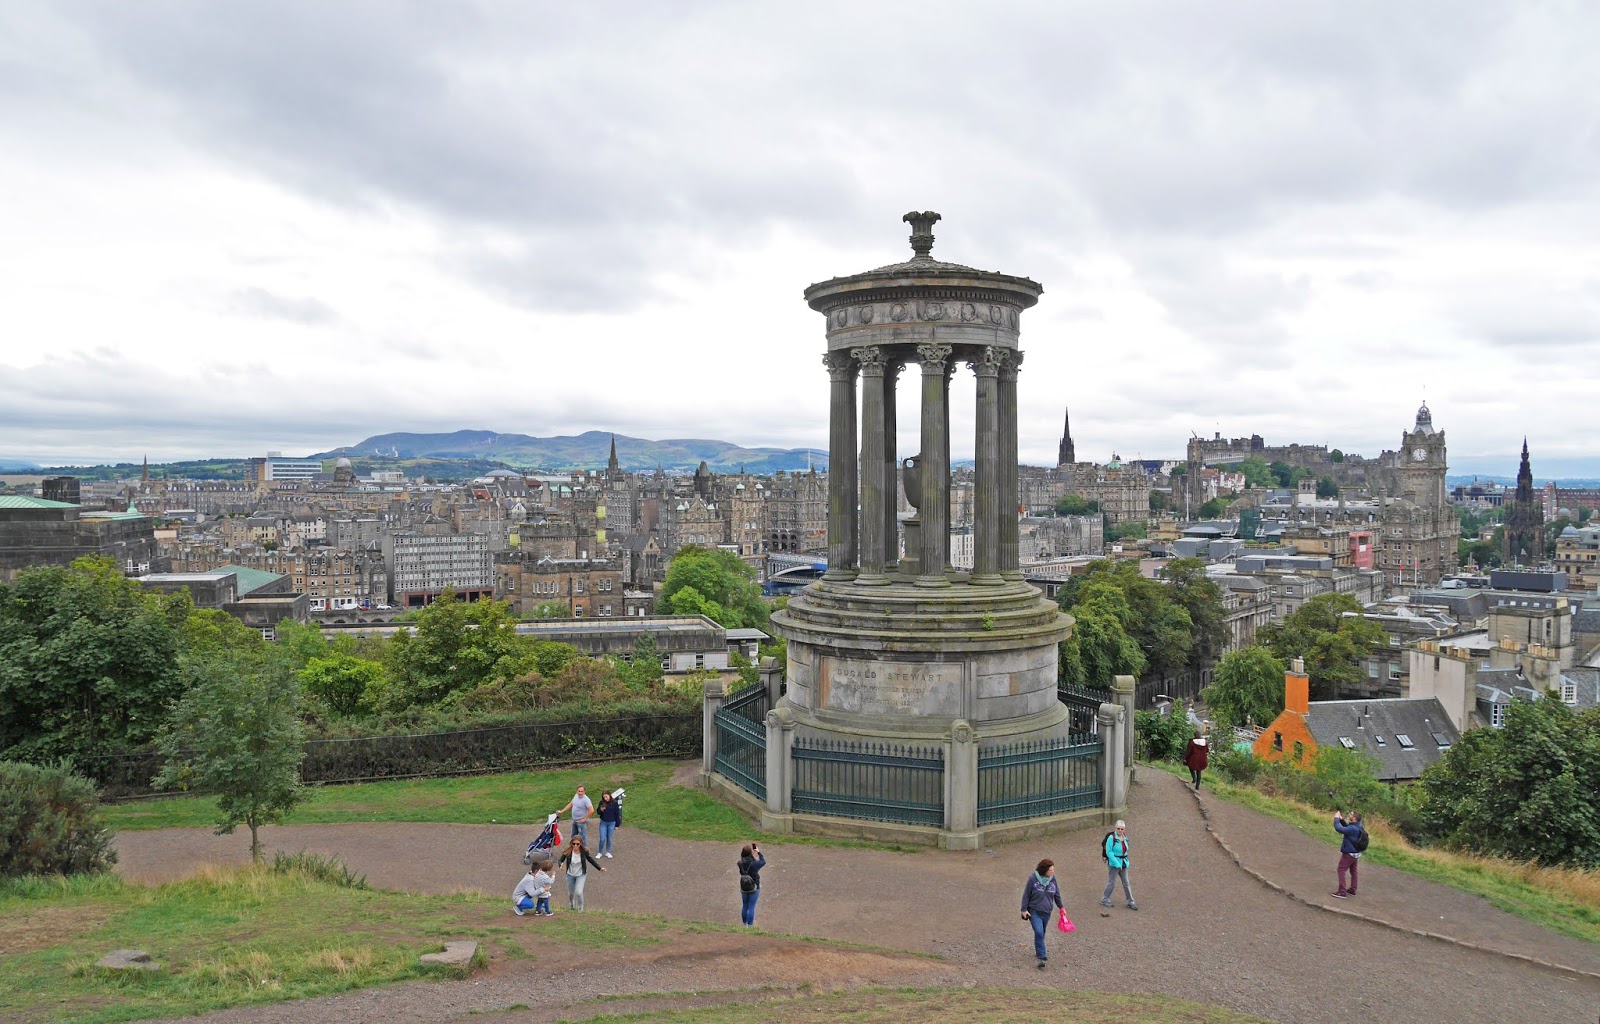 Edinburgh city view from Calton Hill